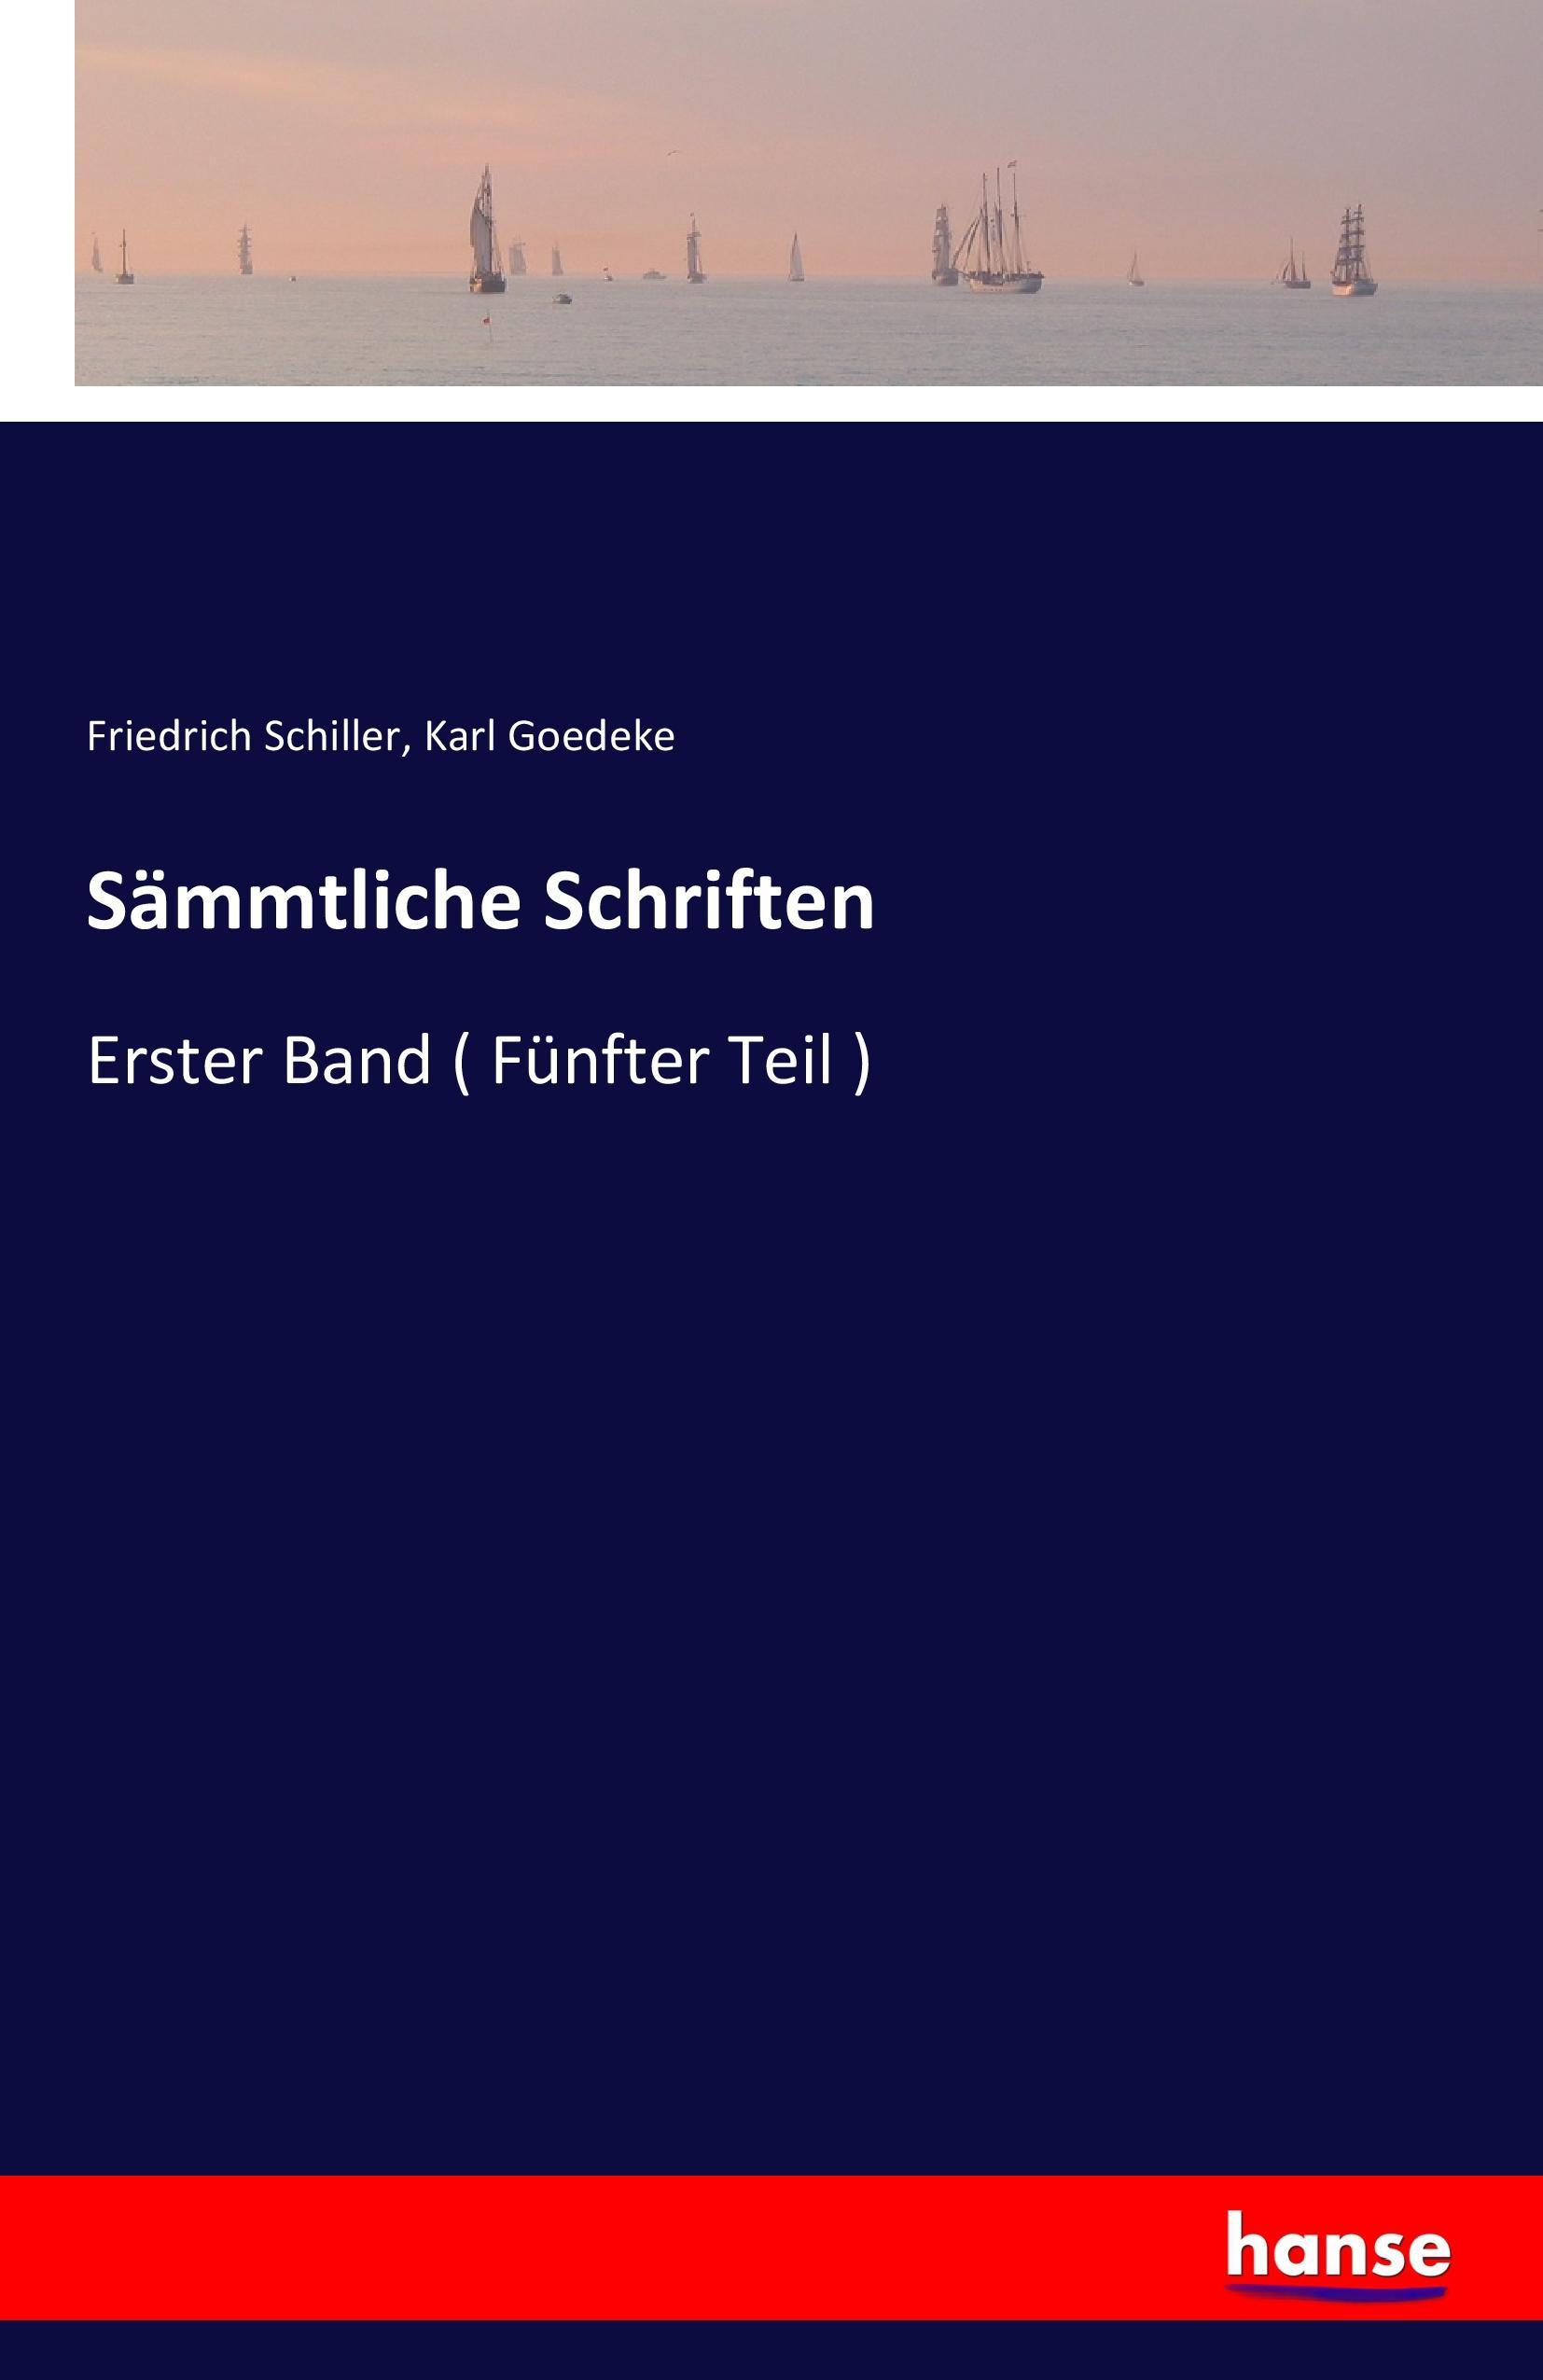 Sämmtliche Schriften | Erster Band ( Fünfter Teil ) | Friedrich Schiller (u. a.) | Taschenbuch | Paperback | 428 S. | Deutsch | 2016 | hansebooks | EAN 9783741133350 - Schiller, Friedrich